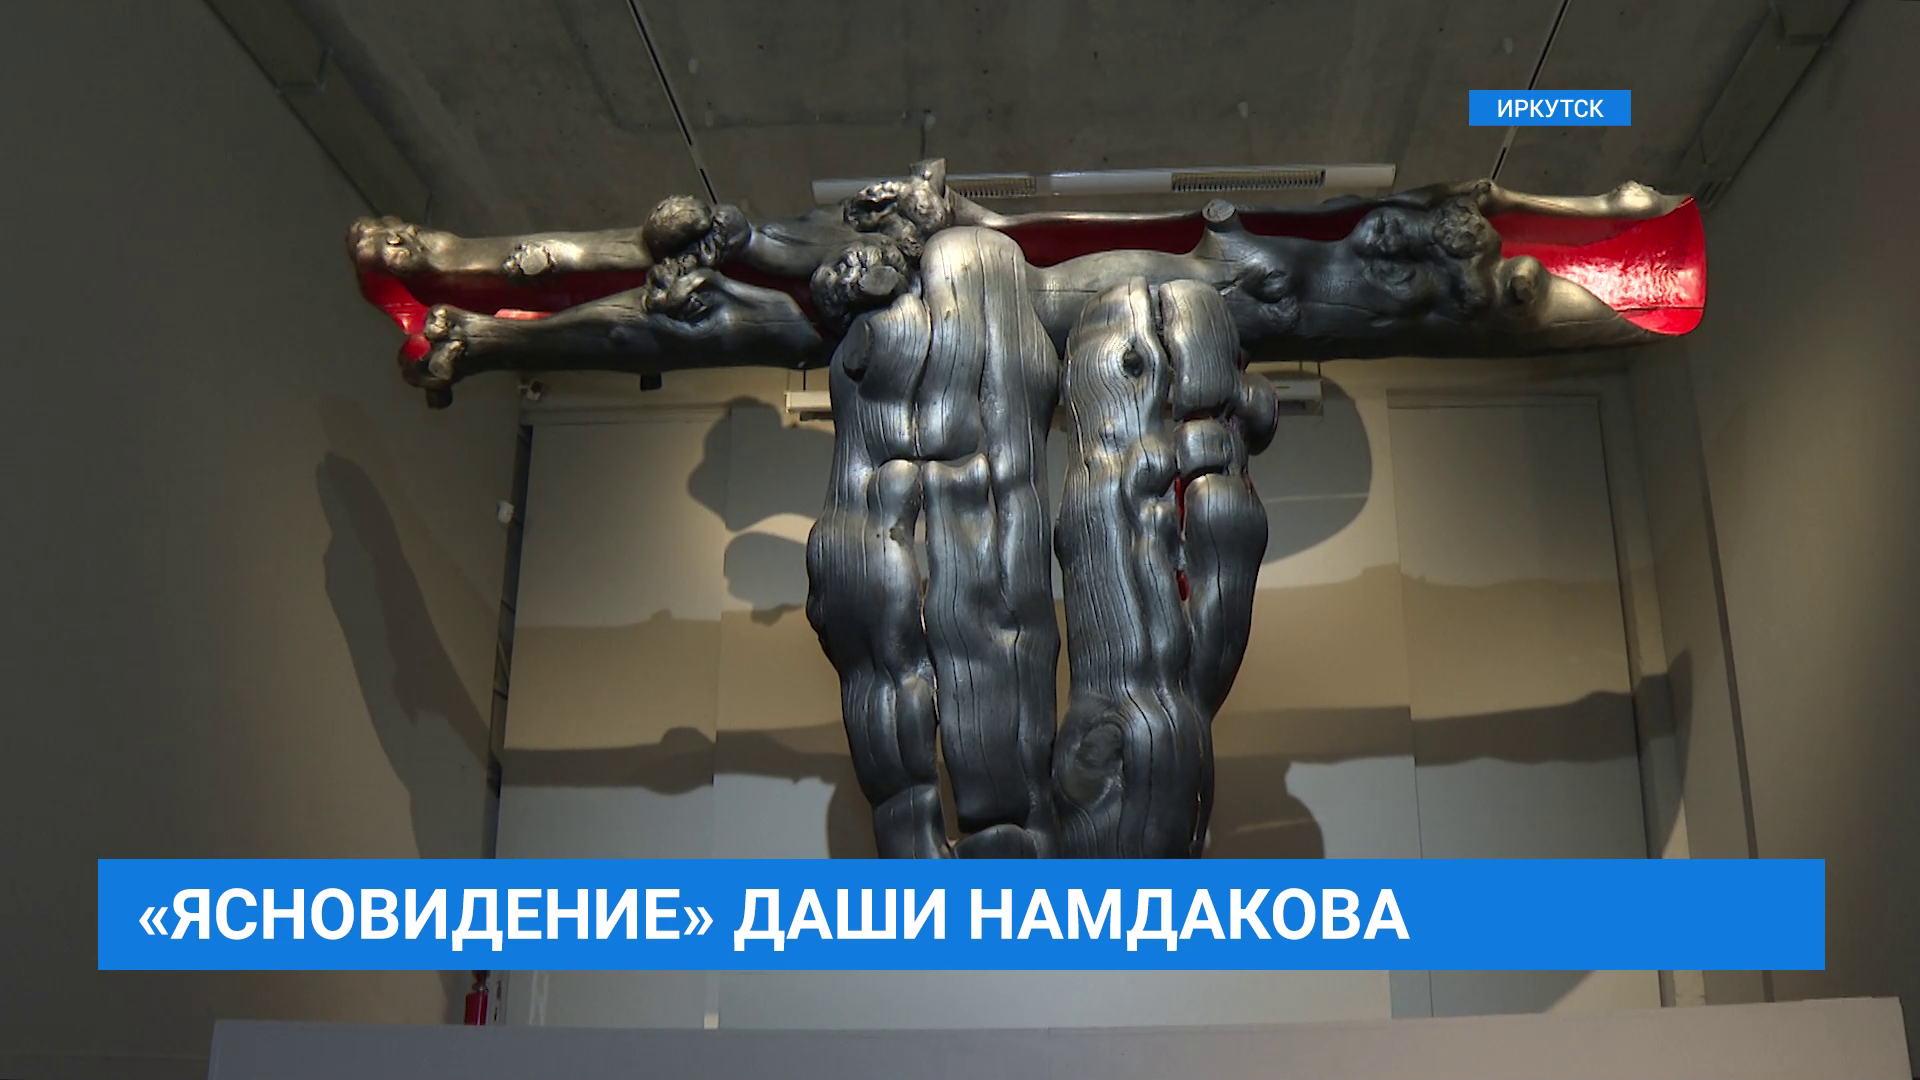 Выставка Даши Намдакова "Ясновидение" в Иркутске